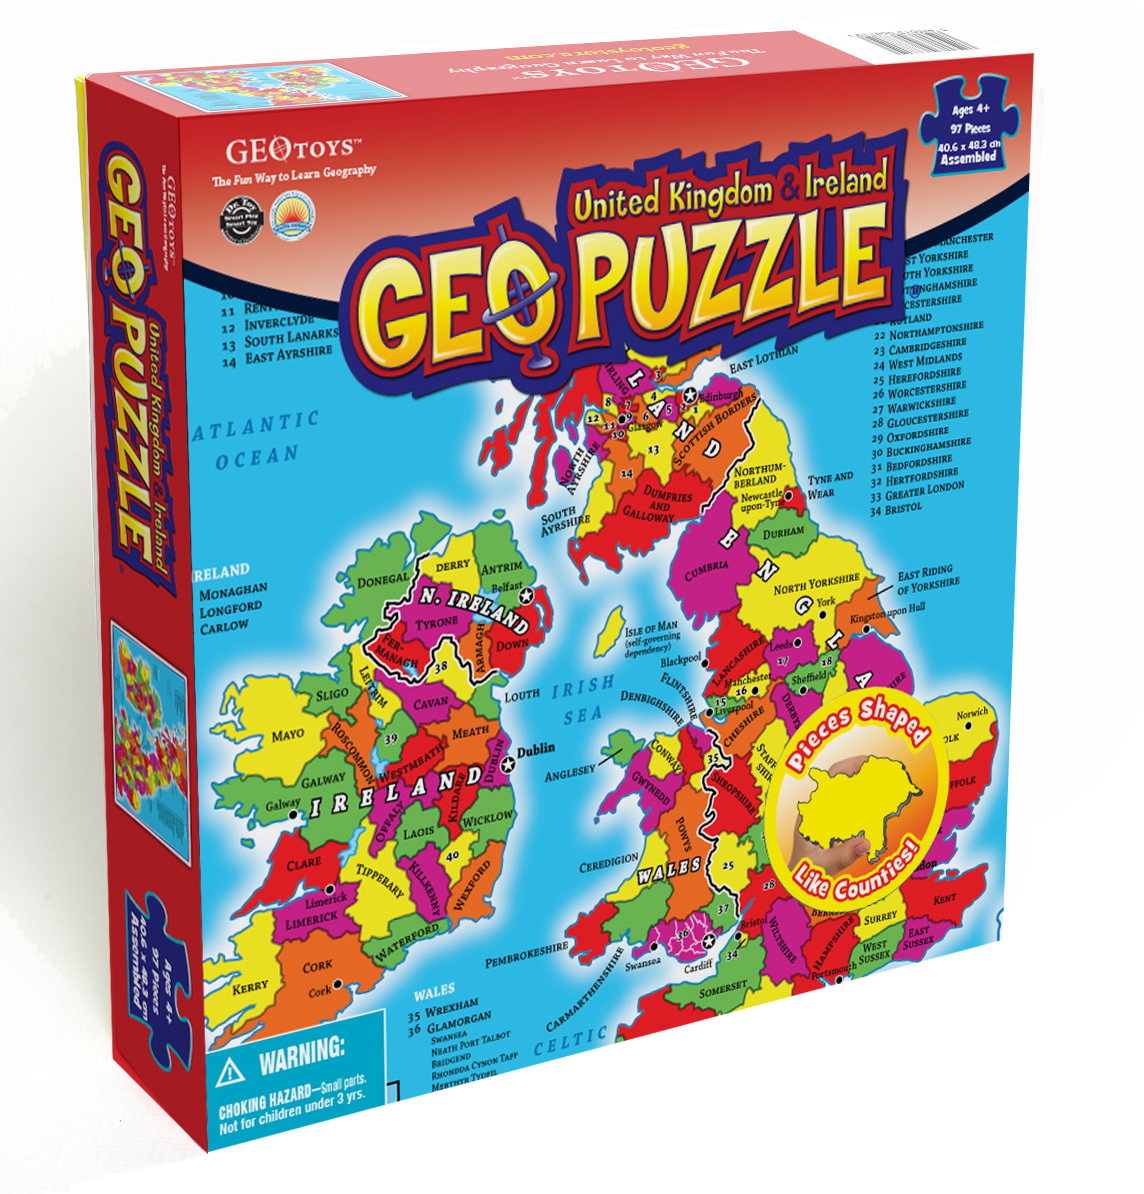 Geopuzzle UK